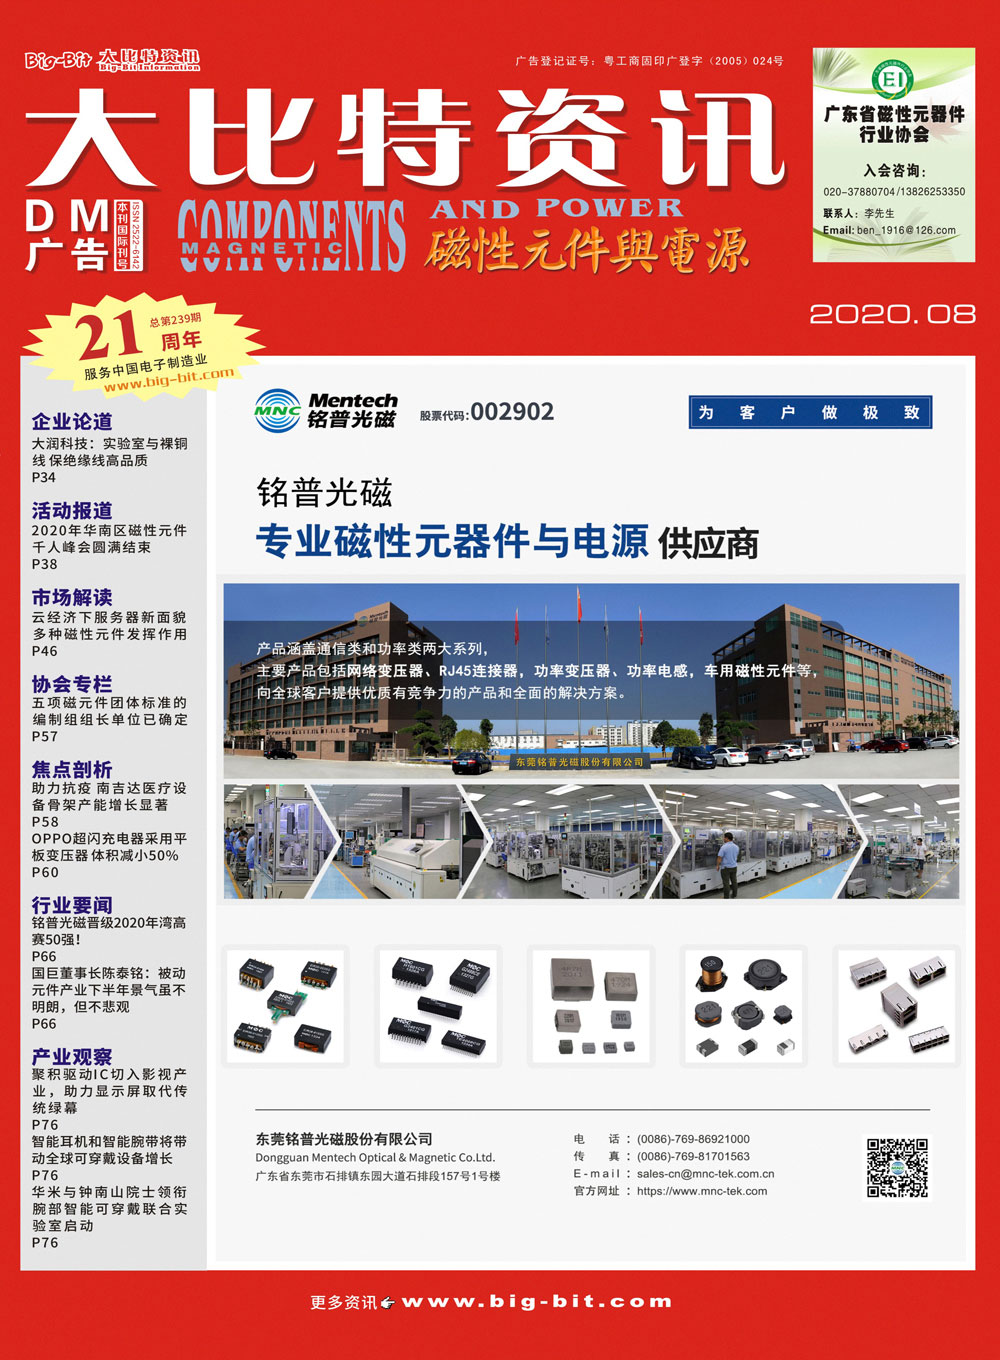 《磁性元件与电源》杂志2020年08月刊